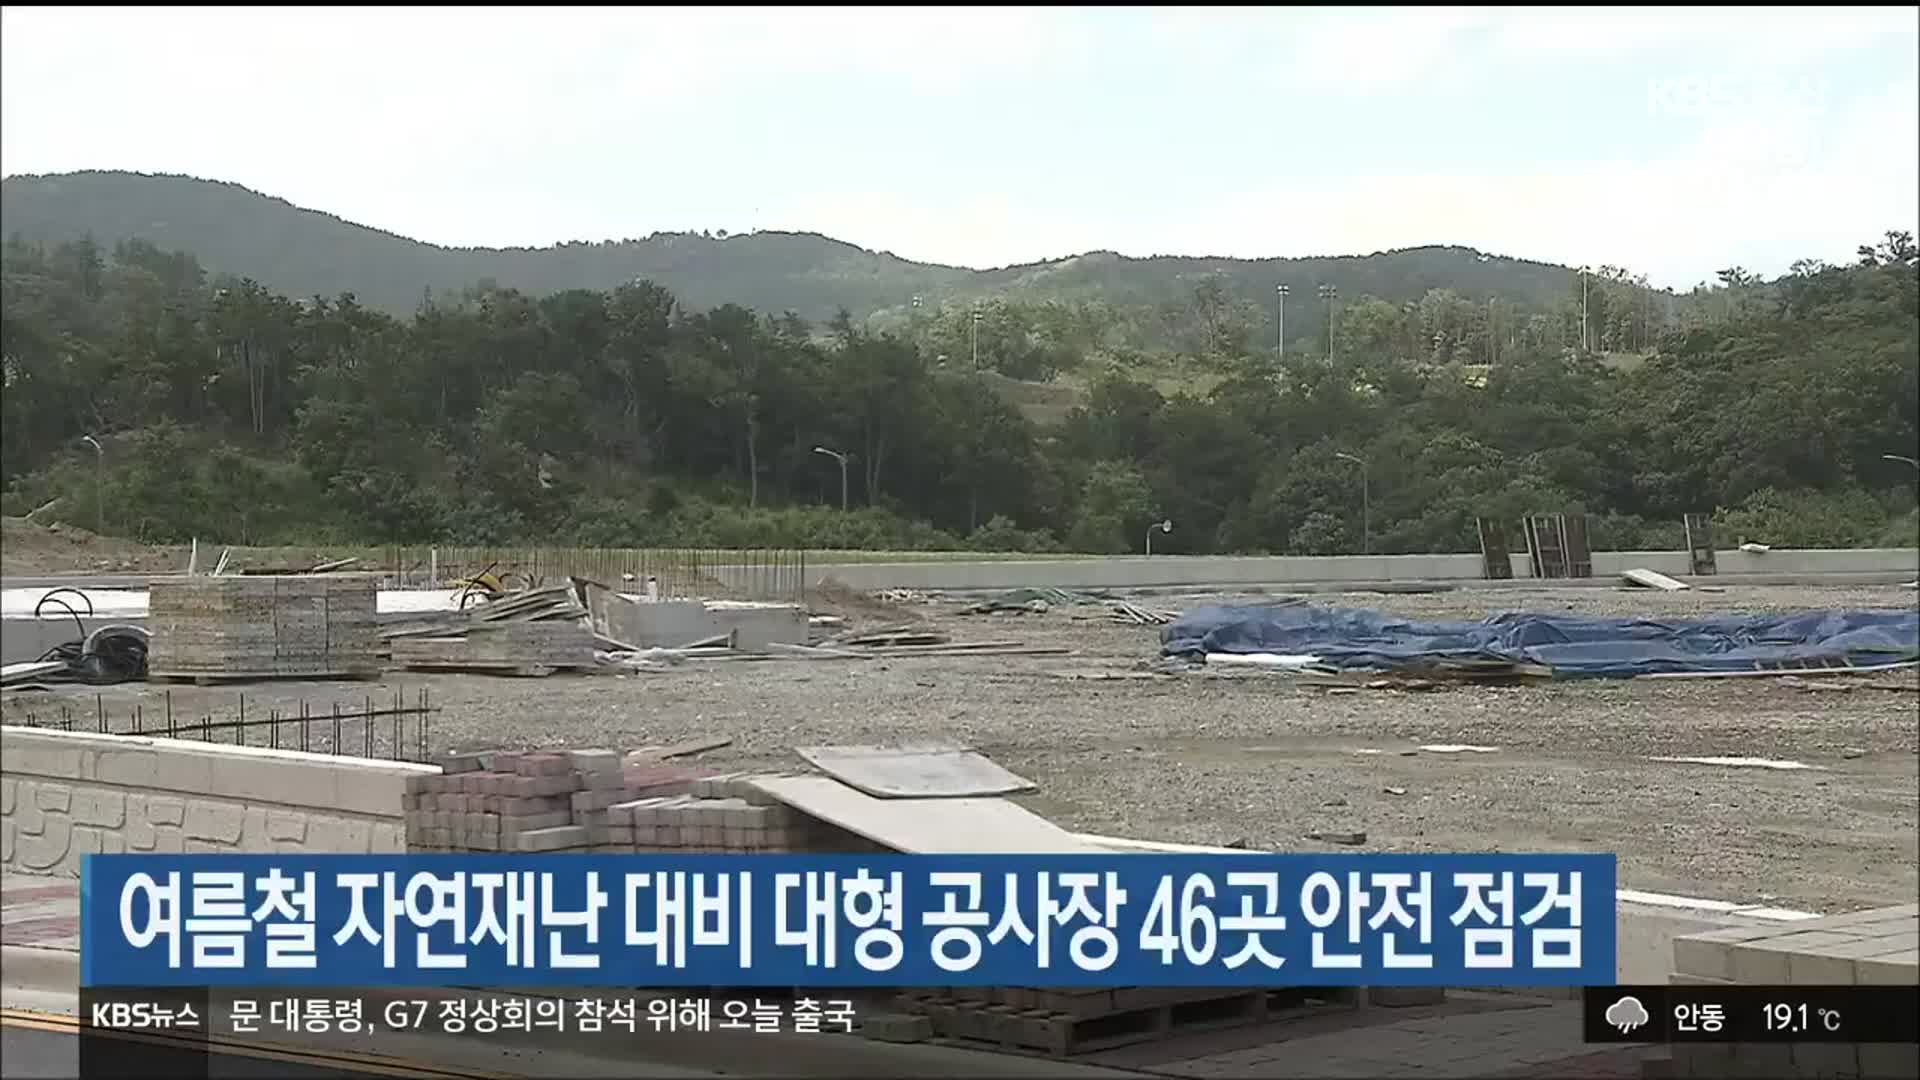 여름철 자연재난 대비 대형 공사장 46곳 안전 점검